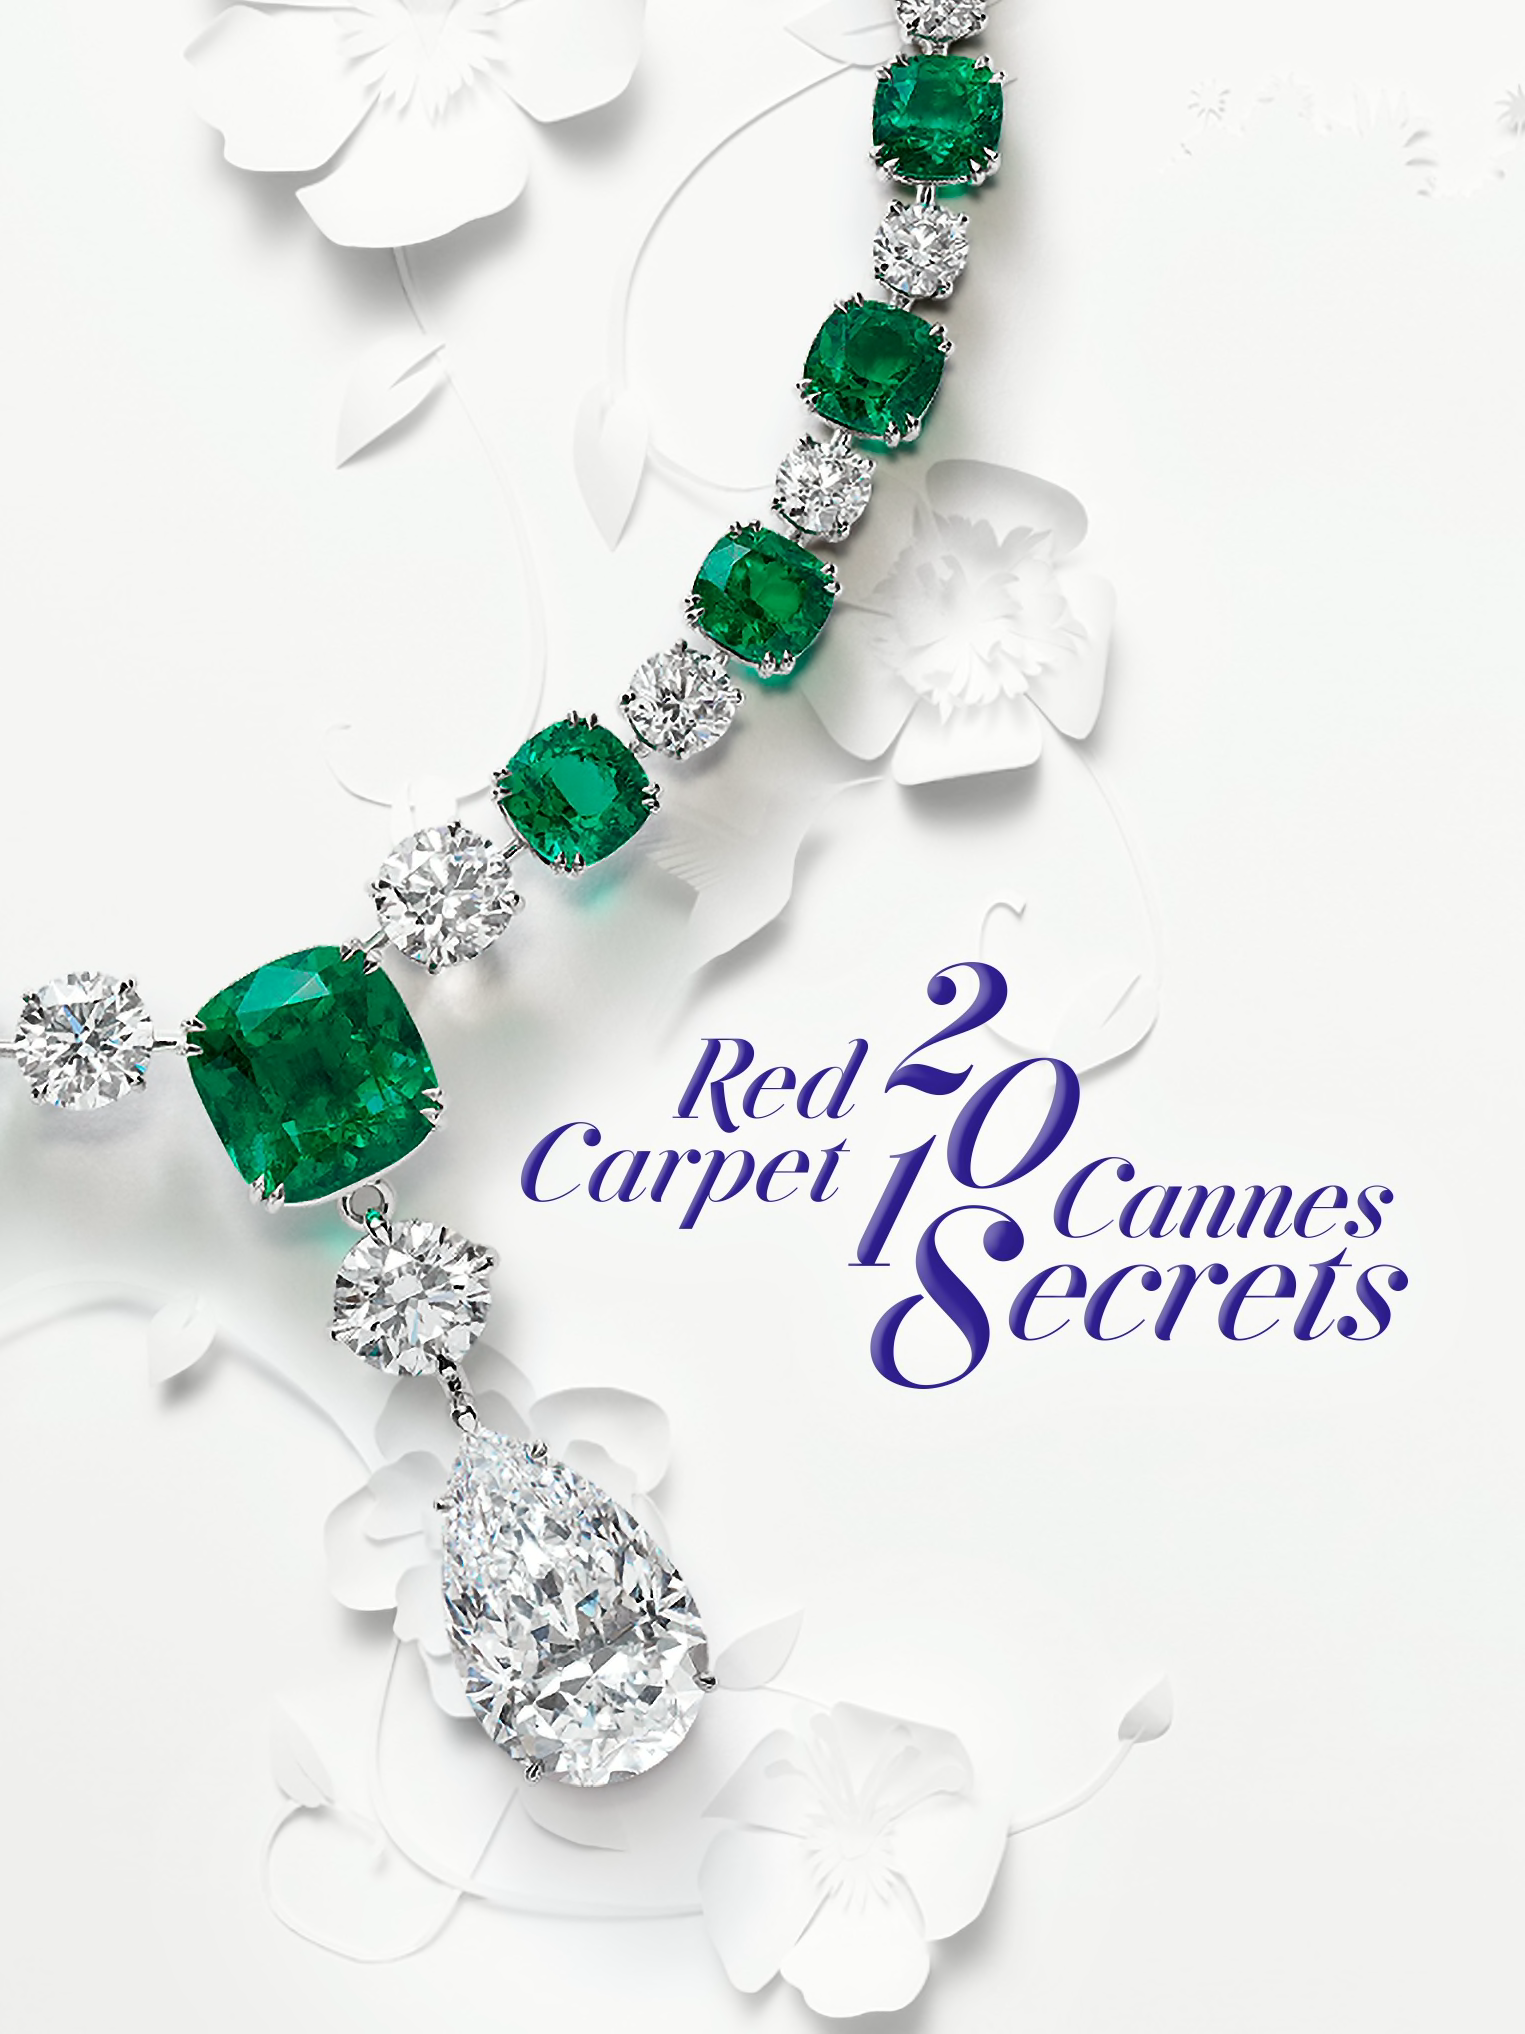 En-tête pour la collection Red Carpet 2018 de Chopard